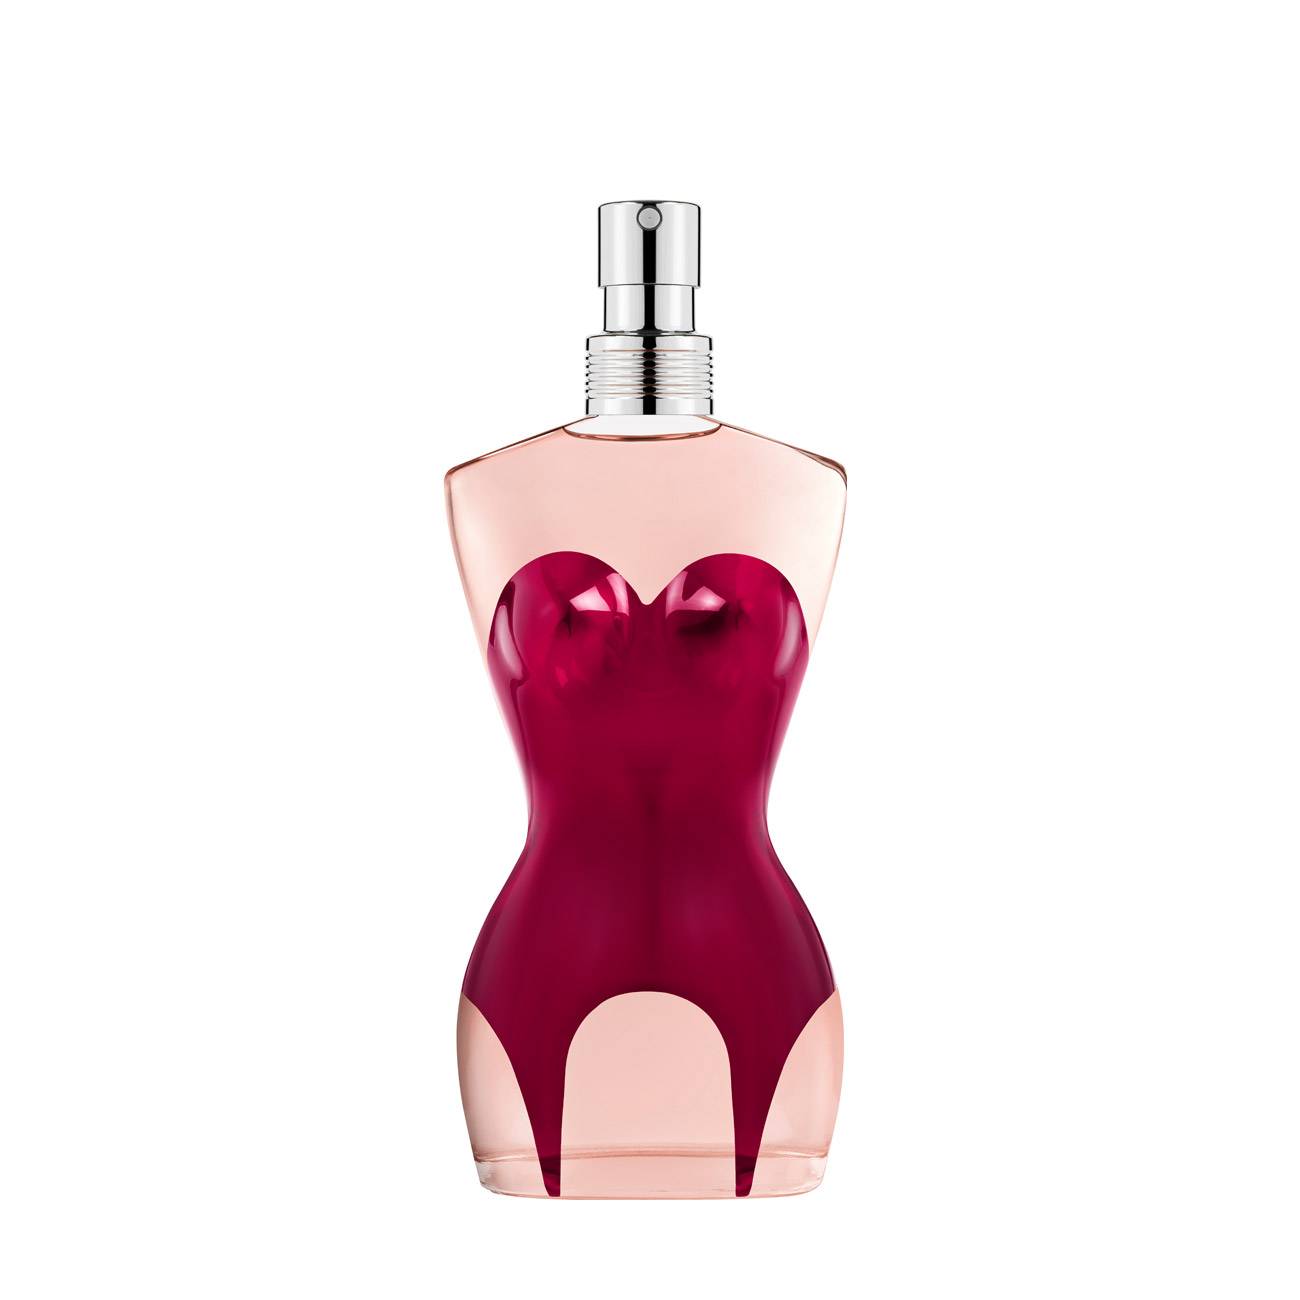 Apa de Parfum Jean Paul Gaultier CLASSIQUE 50ml cu comanda online